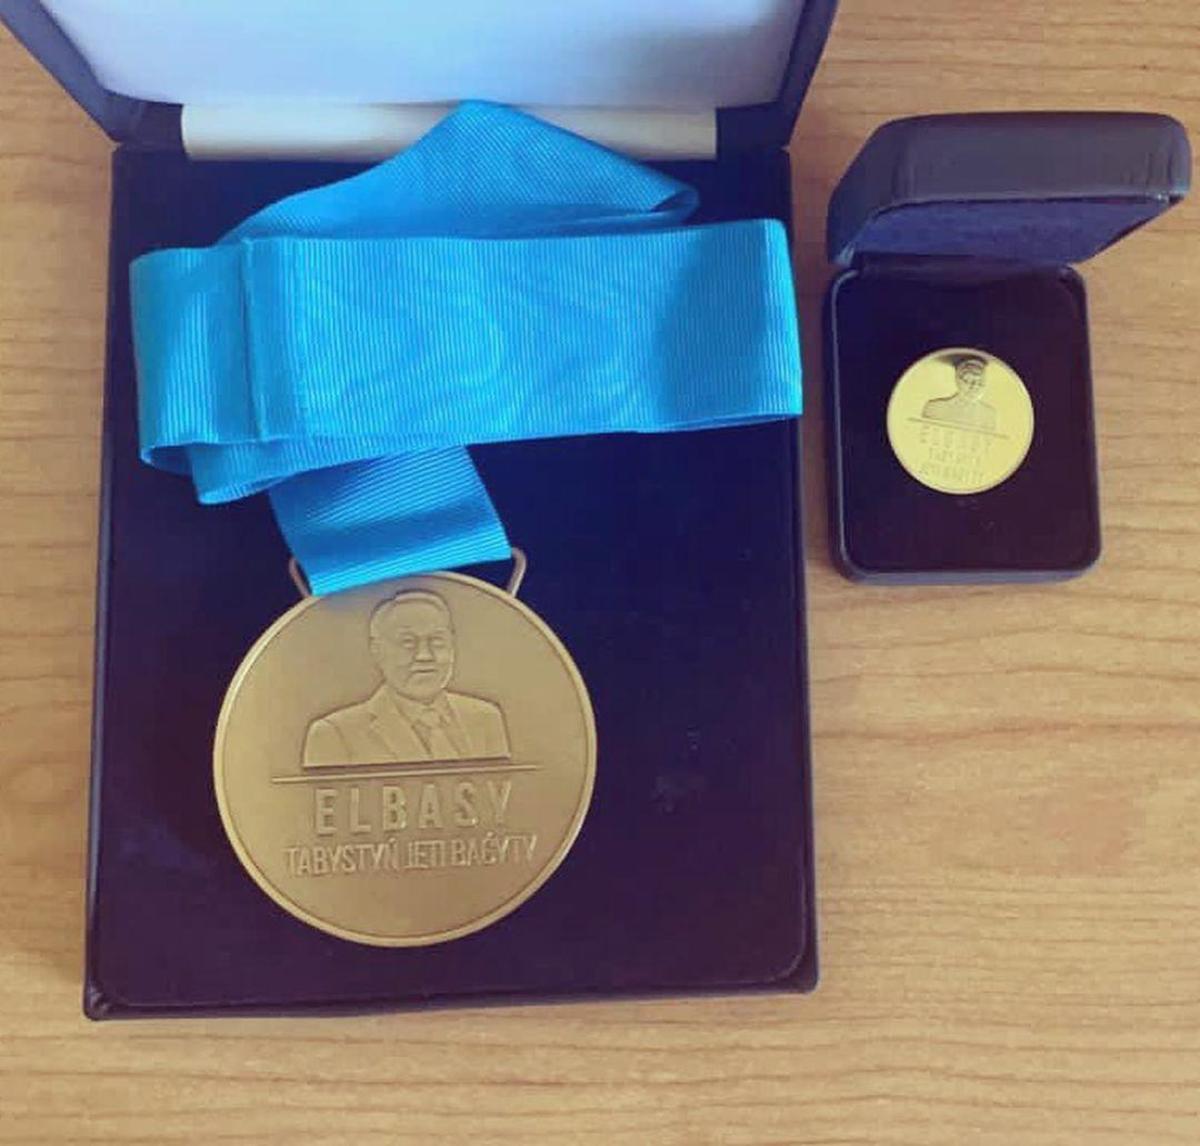 Оразбаева Аружан,Серазитдинова Зарема, Соломаха Дмитрий- обладатели бронзовой медали Елбасы